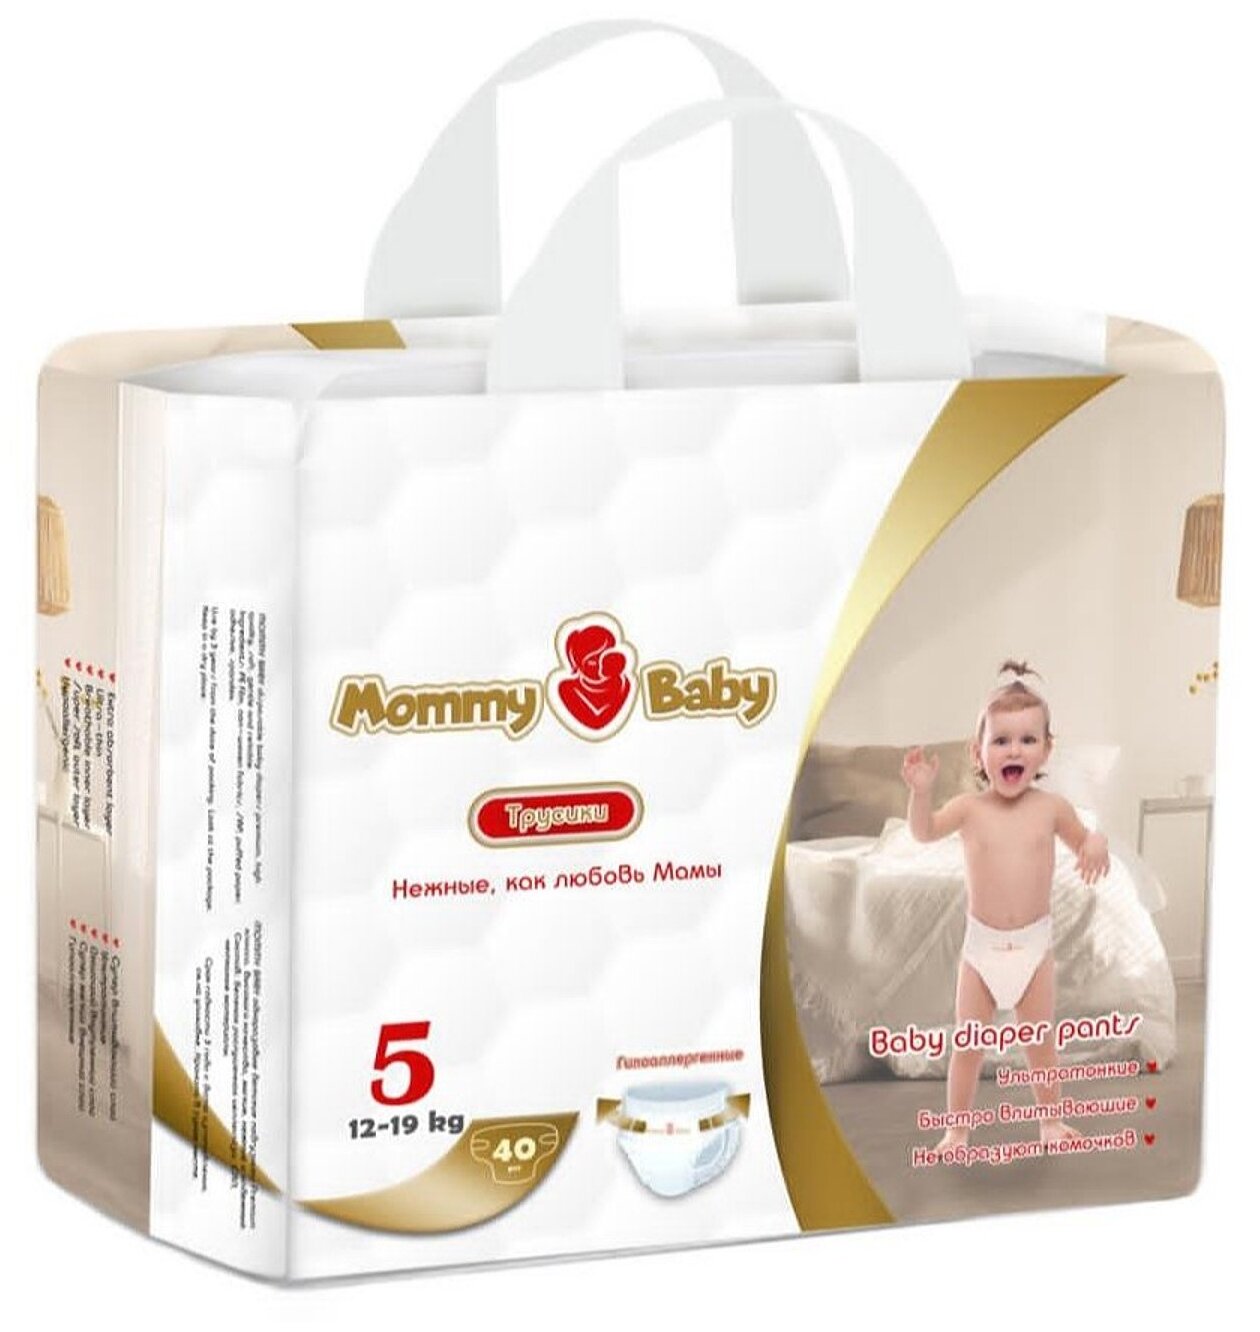 Подгузники-трусики Mommy Baby Размер 5 (12-19кг) 40 штук в упаковке